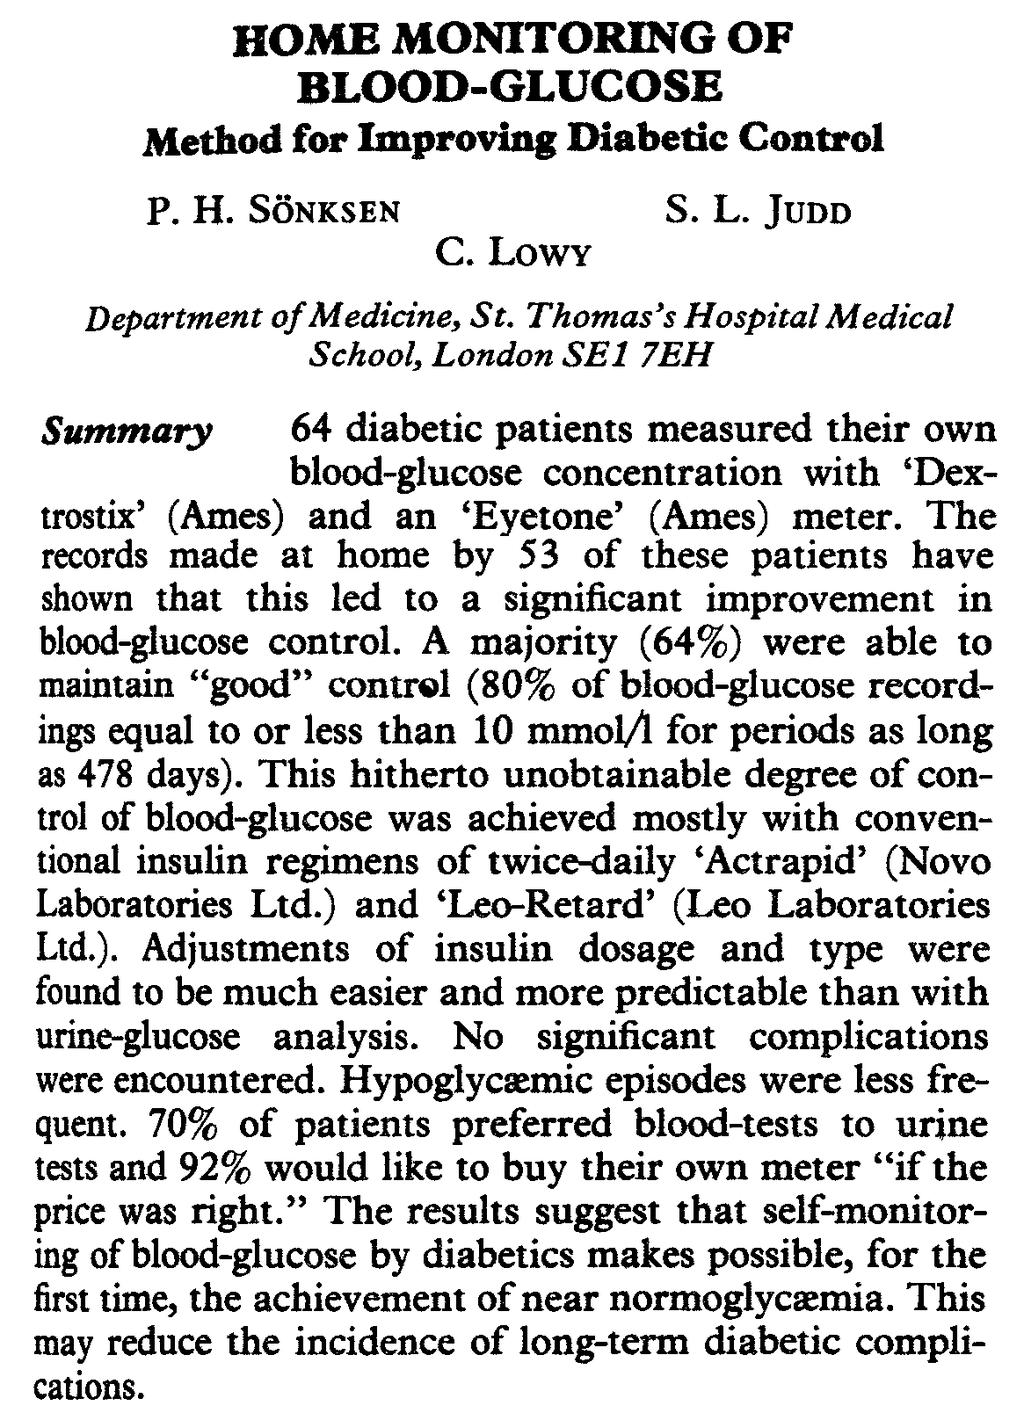 The Lancet 08/04/1978 Rappresenta la prima notizia pubblicata su una importante rivista medica che prenda in considerazione l automonitoraggio